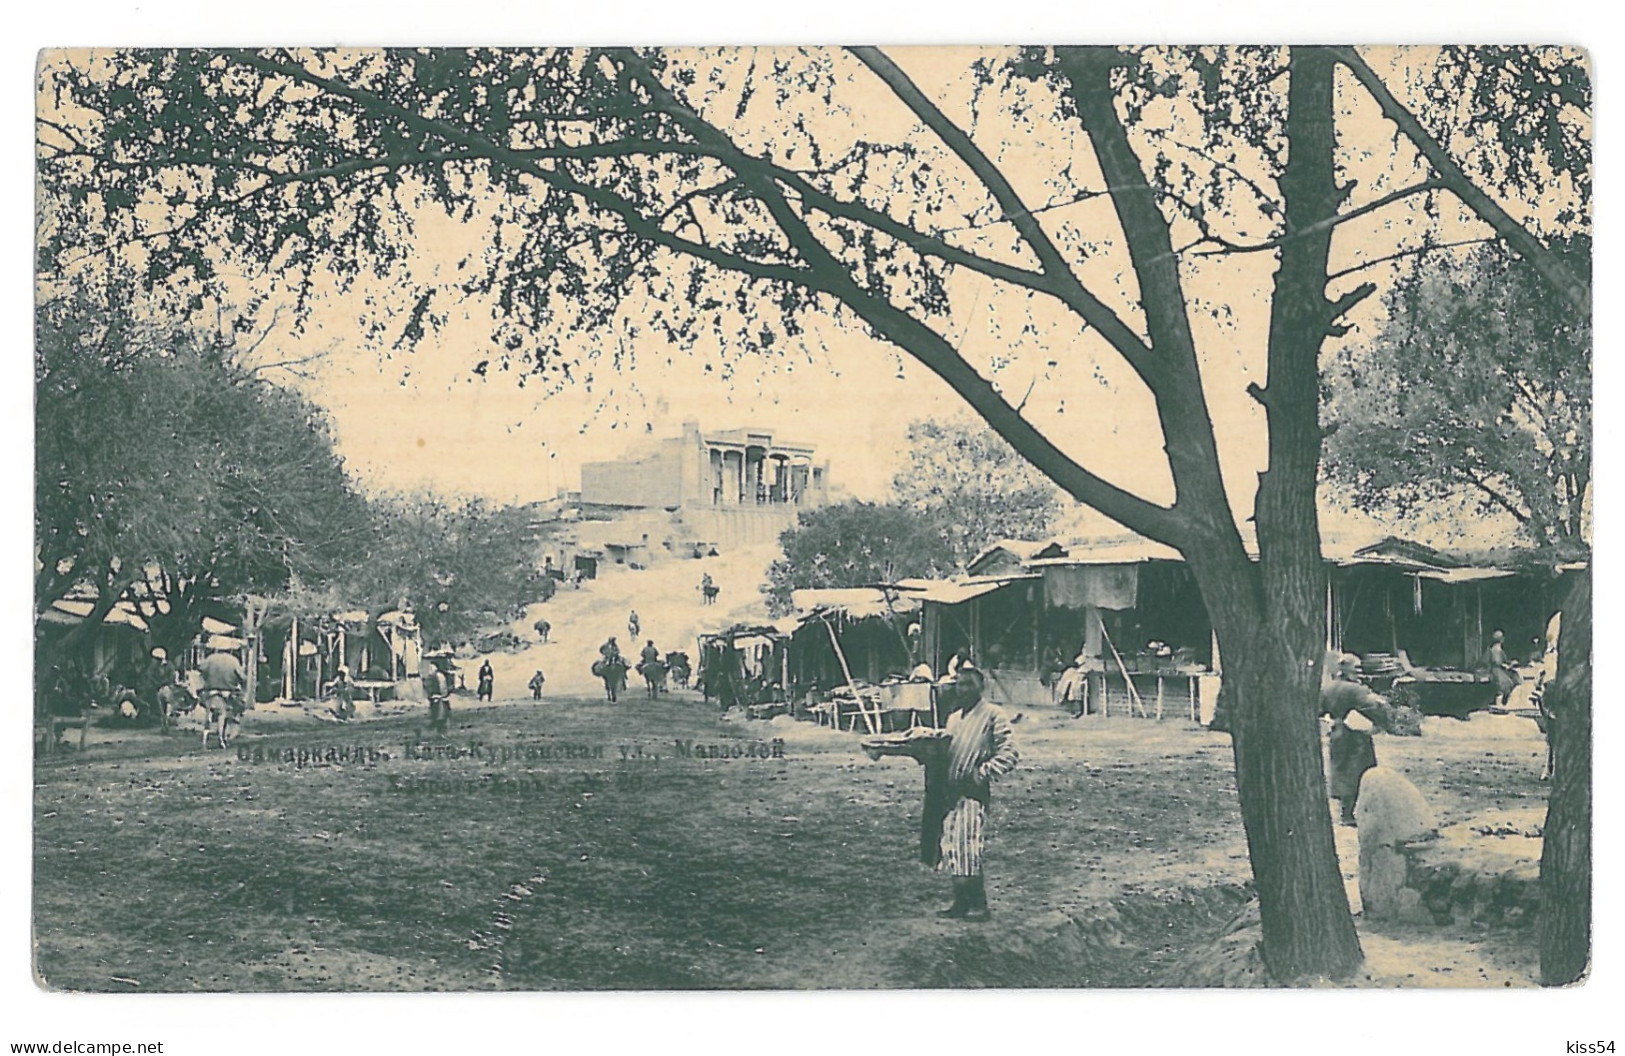 U 22 - 15533 SAMARKAND, Market, Uzbekistan - Old Postcard - Unused - 1914 - Usbekistan